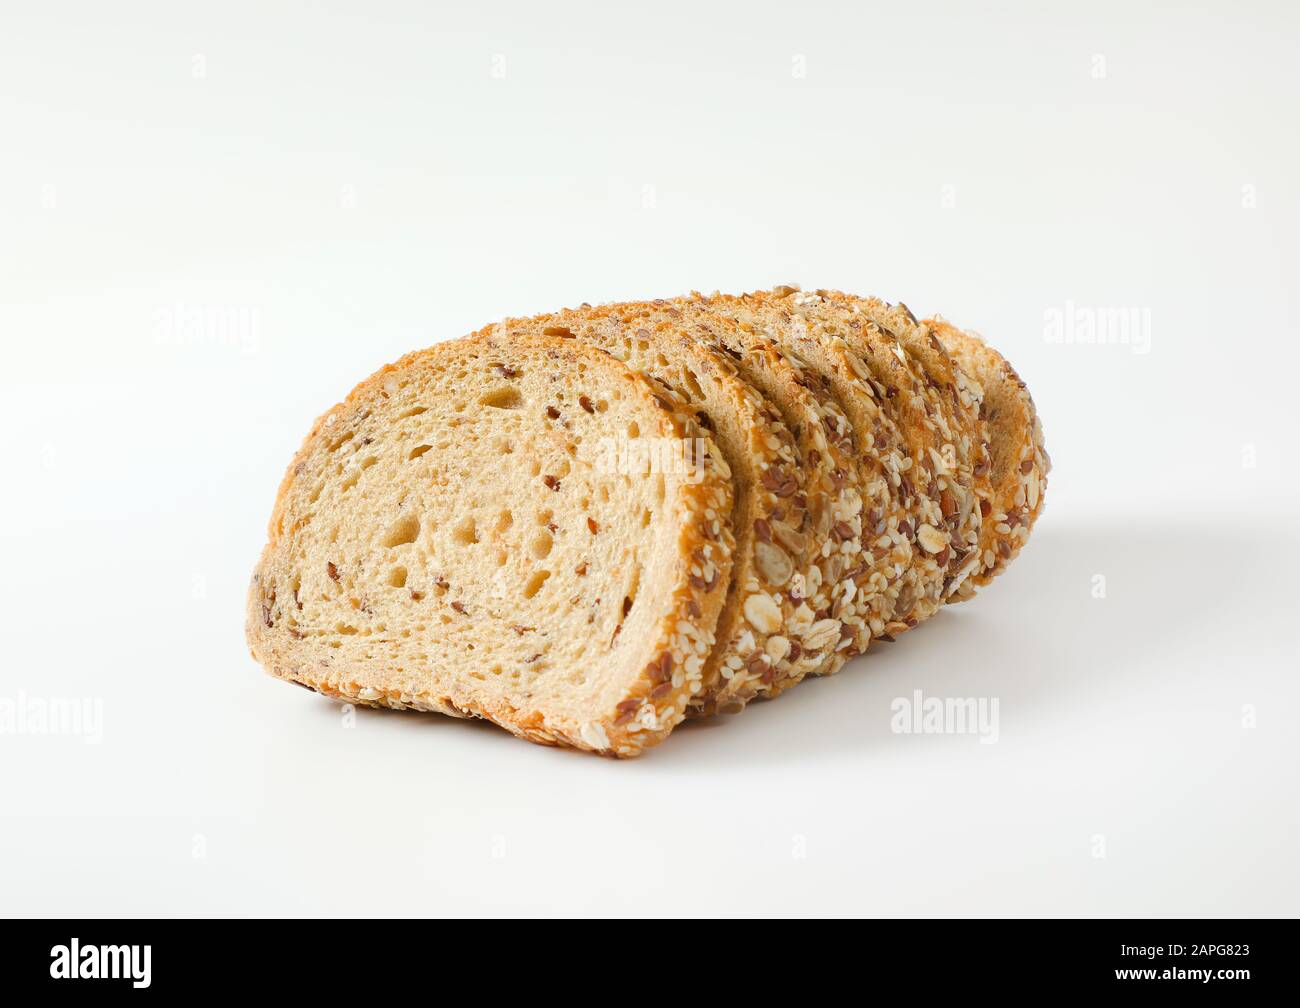 Pane a fette di pane a grani interi, crosta ricoperta di avena e semi laminati (lino, sesamo, girasole) Foto Stock